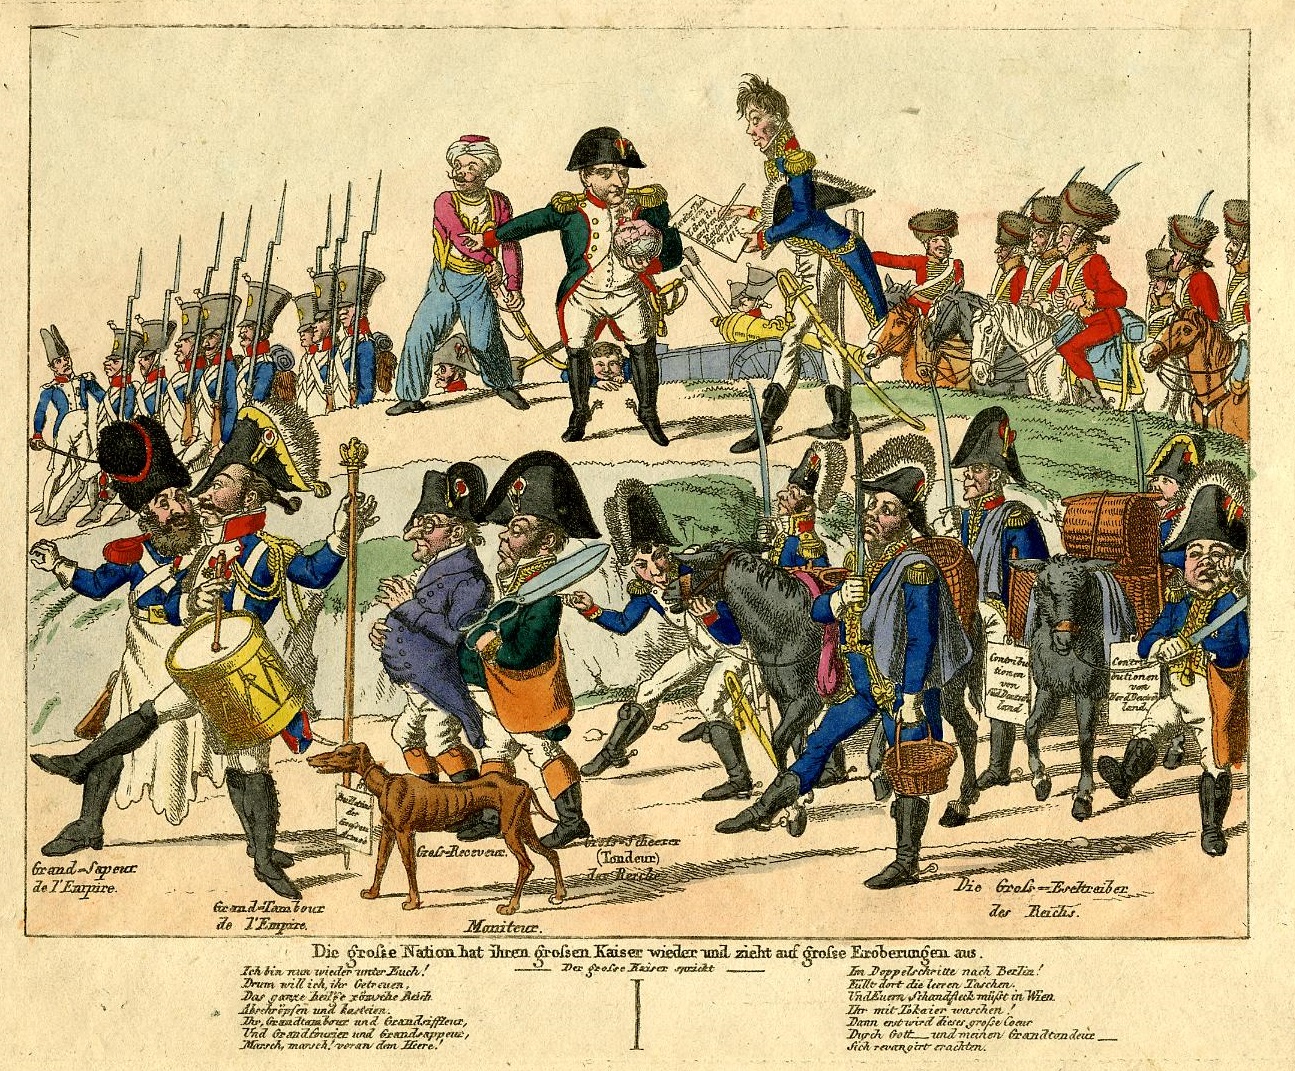 Die grosse Nation hat ihren grossen Kaiser wieder und zieht auf grosse Eroberungen aus, 1815